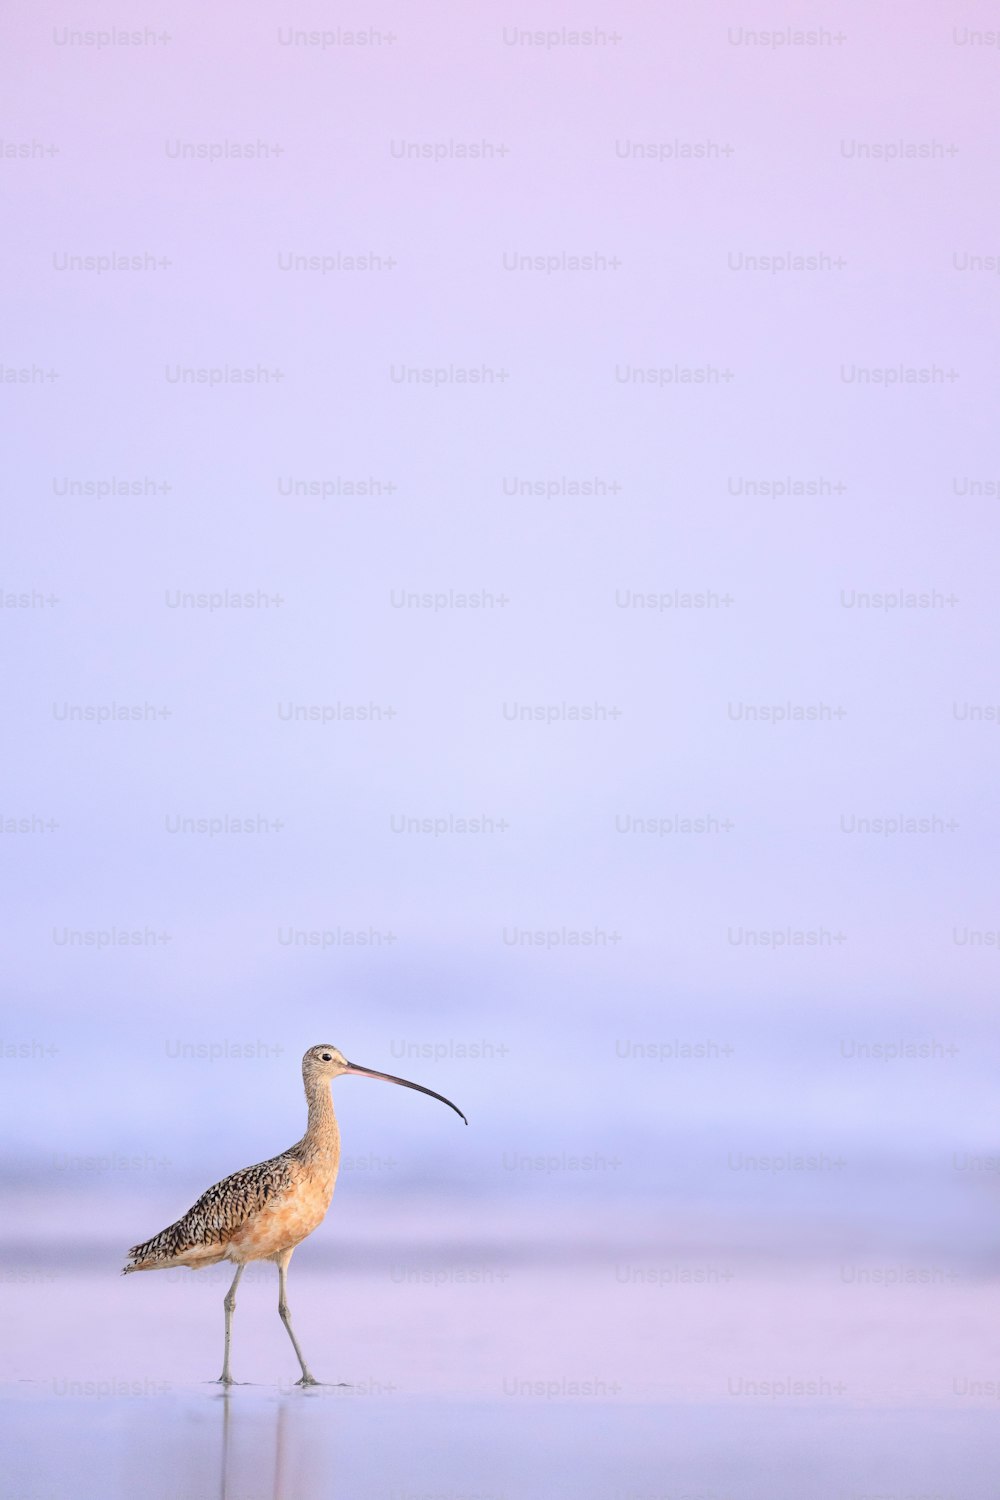 Un oiseau au long bec marchant sur une plage